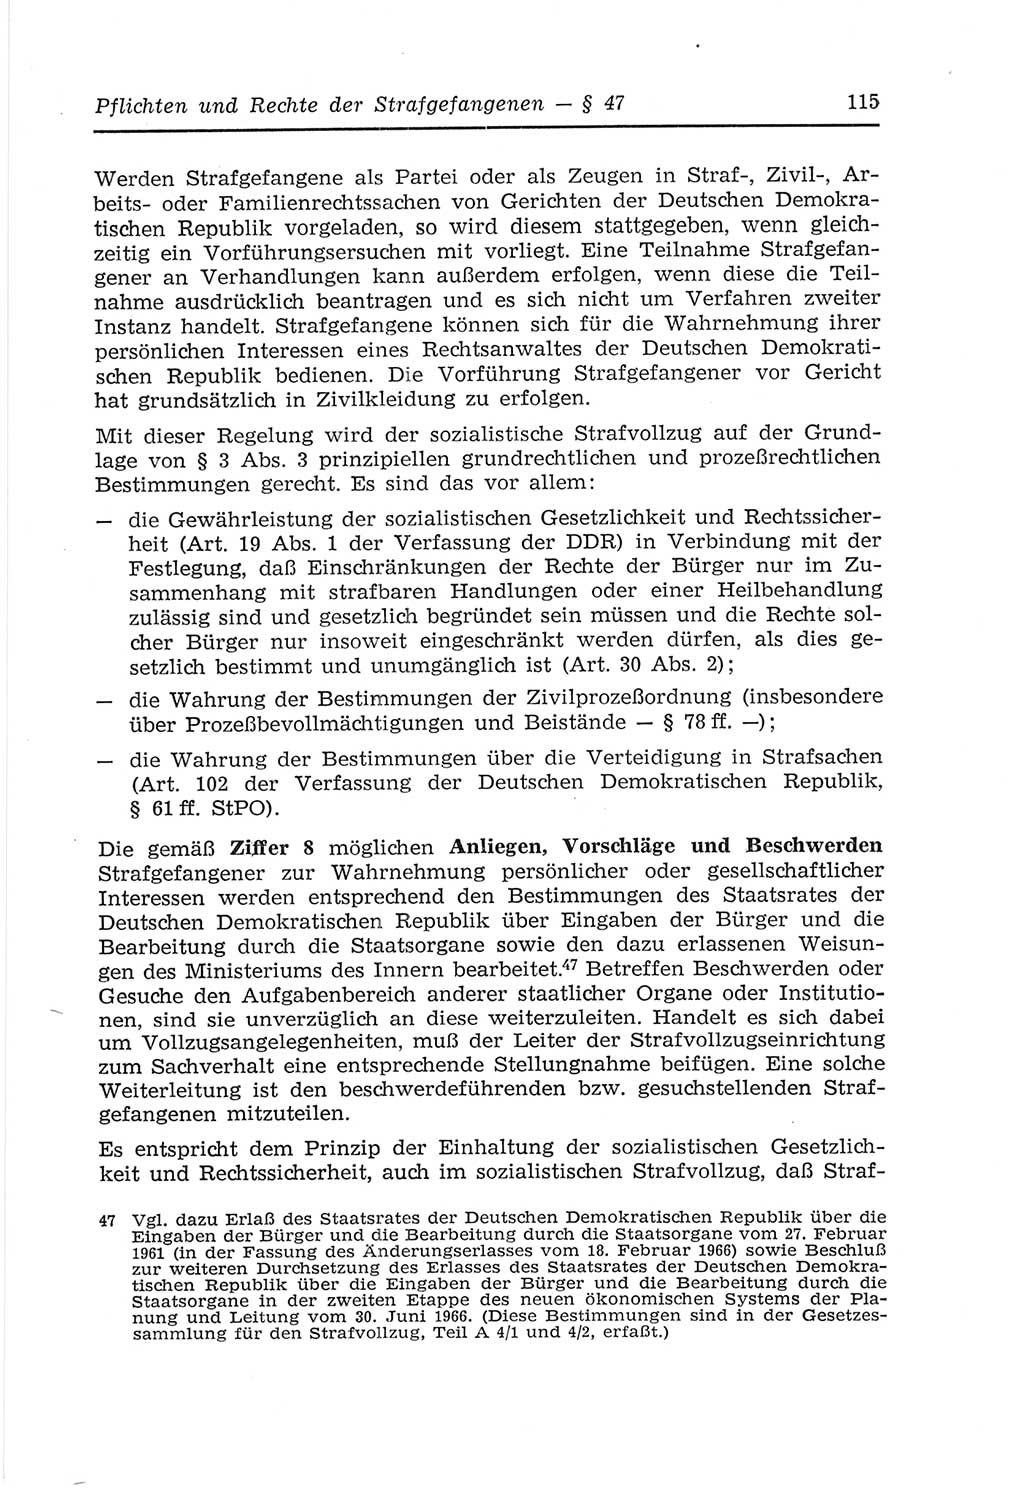 Strafvollzugs- und Wiedereingliederungsgesetz (SVWG) der Deutschen Demokratischen Republik (DDR) 1968, Seite 115 (SVWG DDR 1968, S. 115)